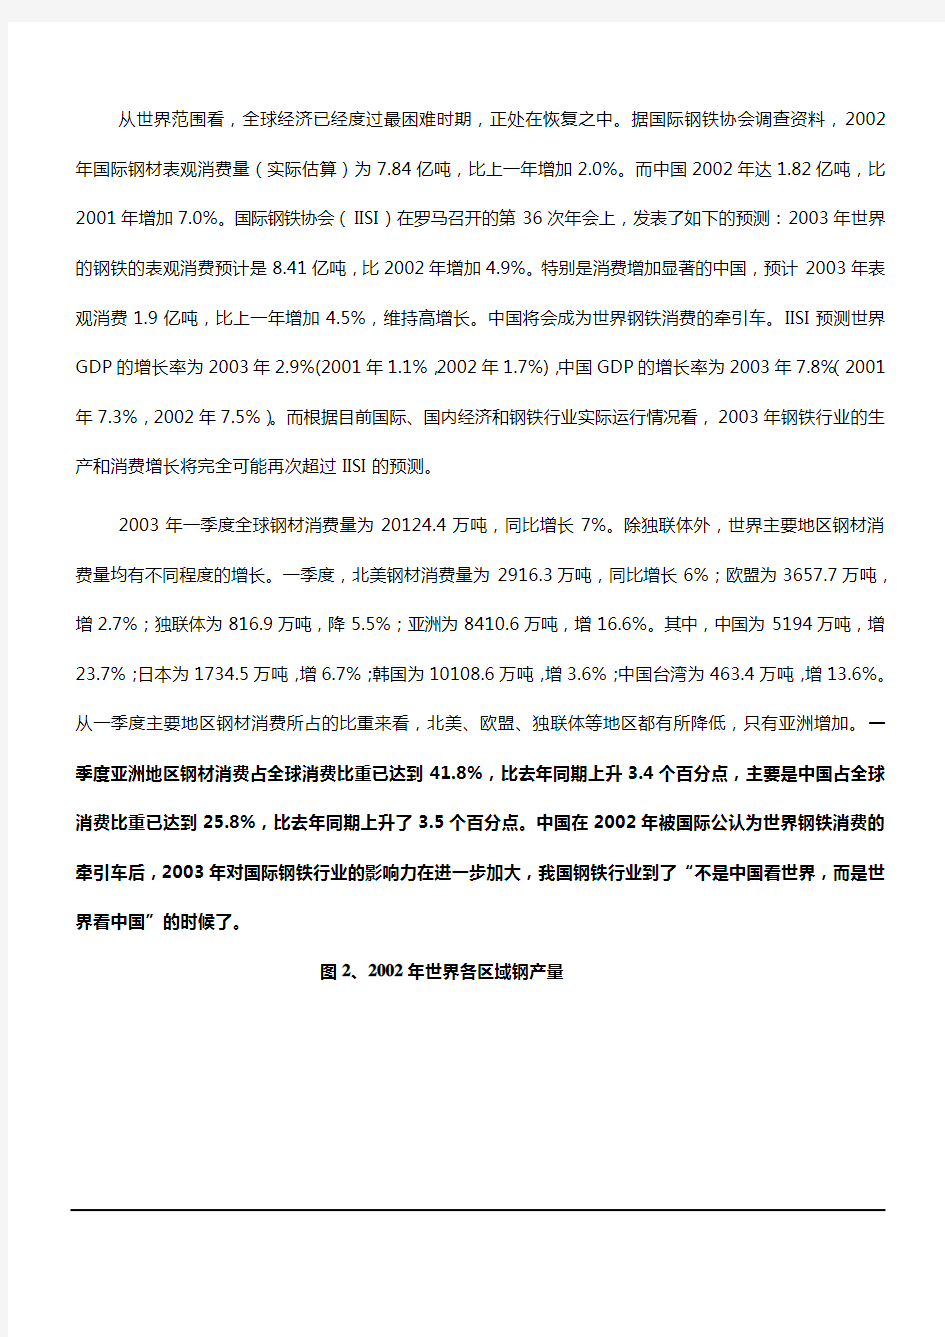 2003中国钢铁行业调查报告